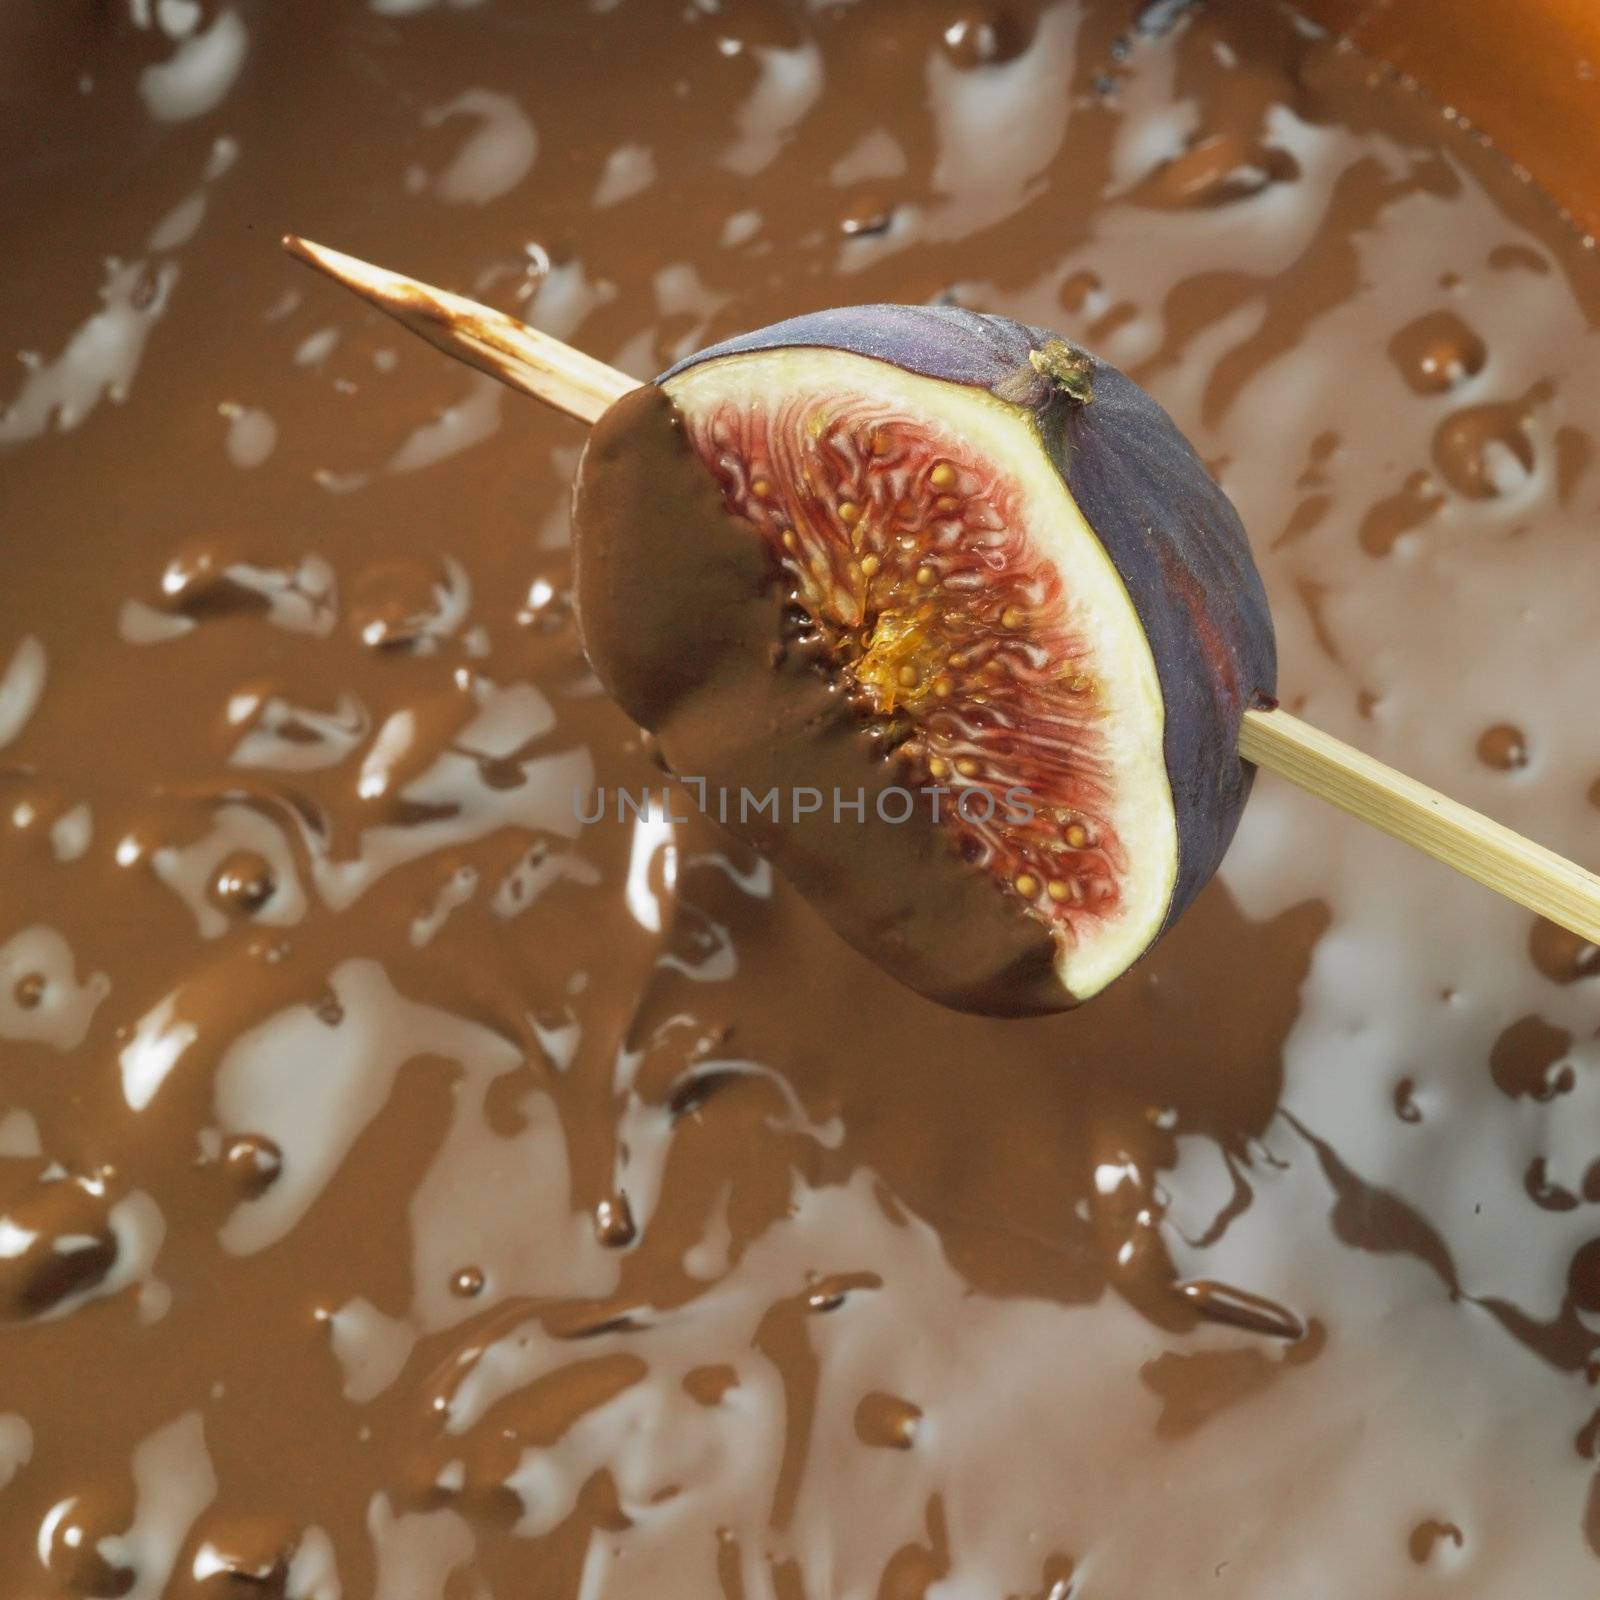 chocolate fondue by phbcz